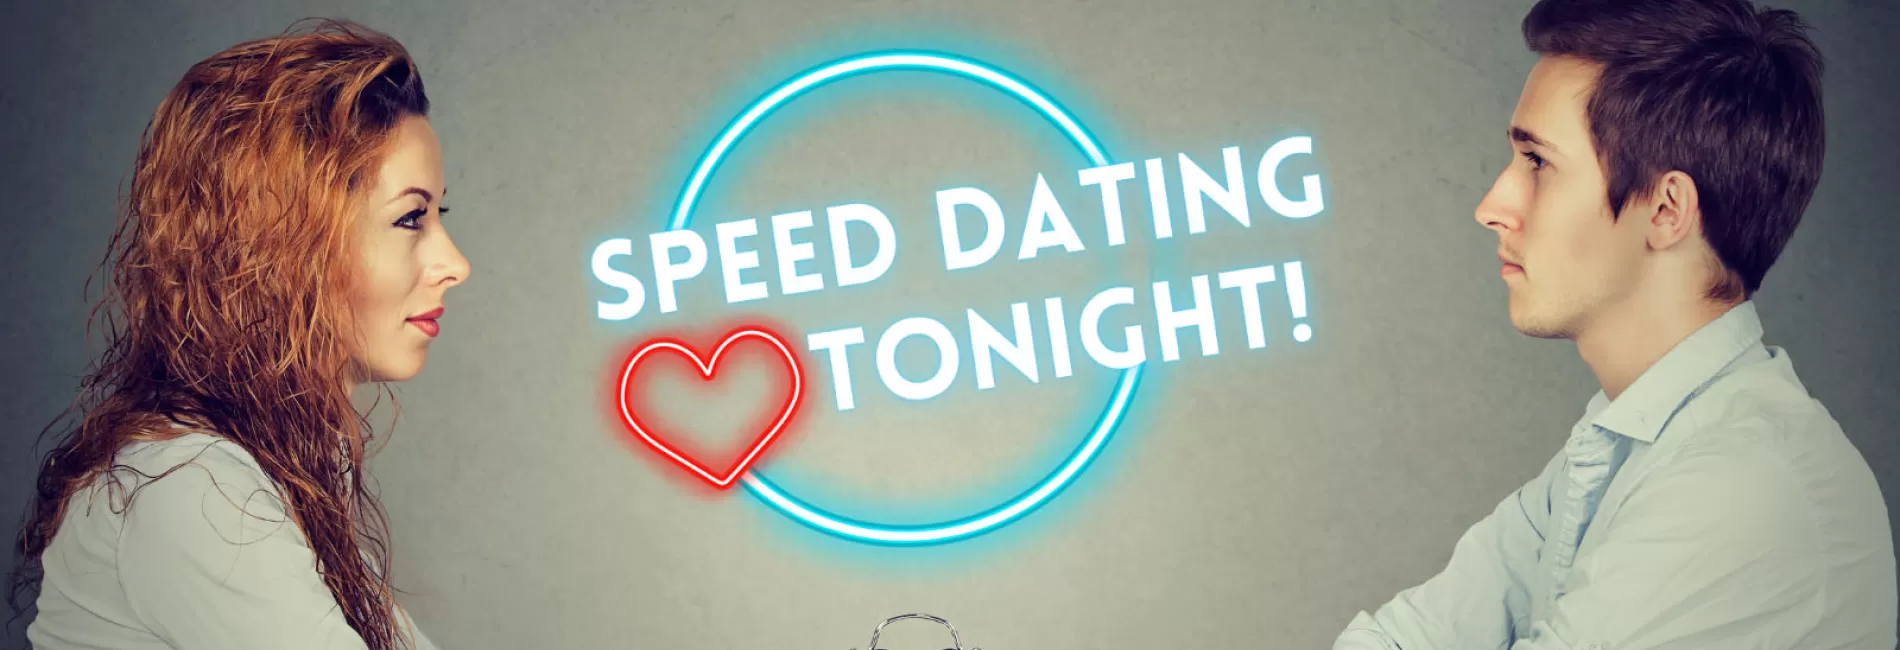 Speed Dating Tonight!